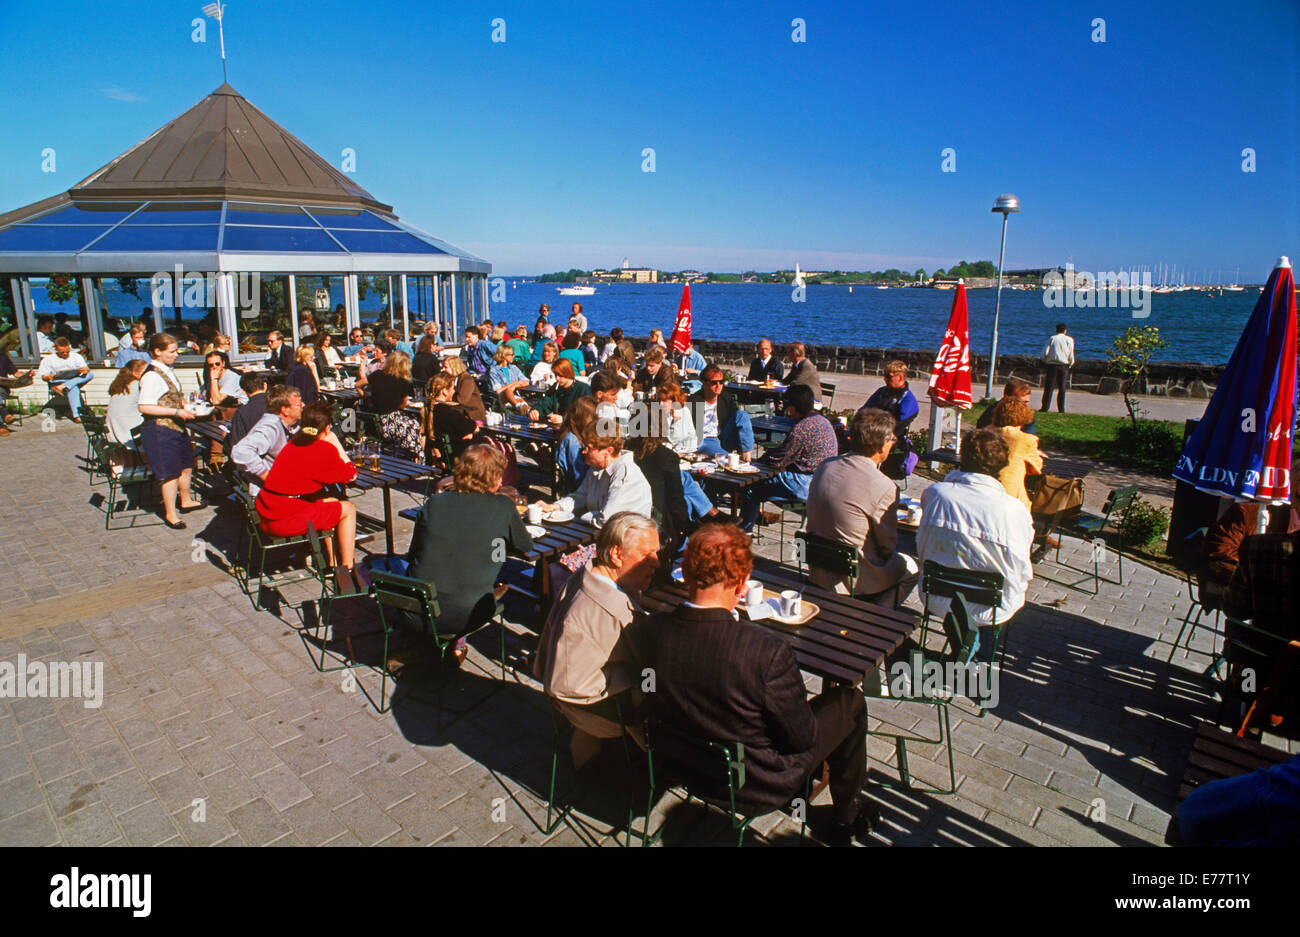 Touristen im Sommer und Finnen im Outdoor-Restaurant namens Ursula nahe Hafen an der Ostsee in Helsinki, Finnland Stockfoto